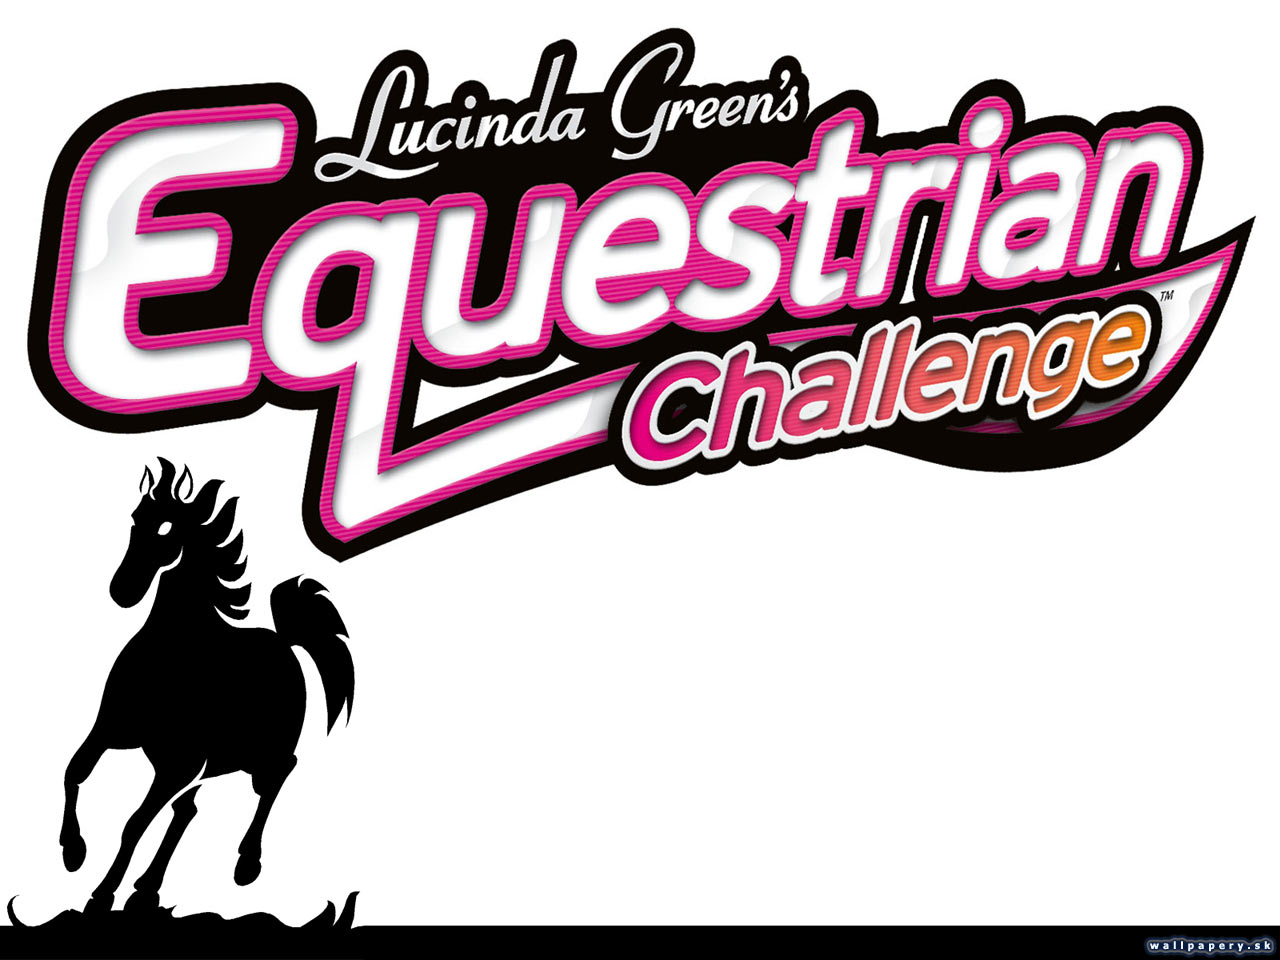 Lucinda Green's Equestrian Challenge - wallpaper 1